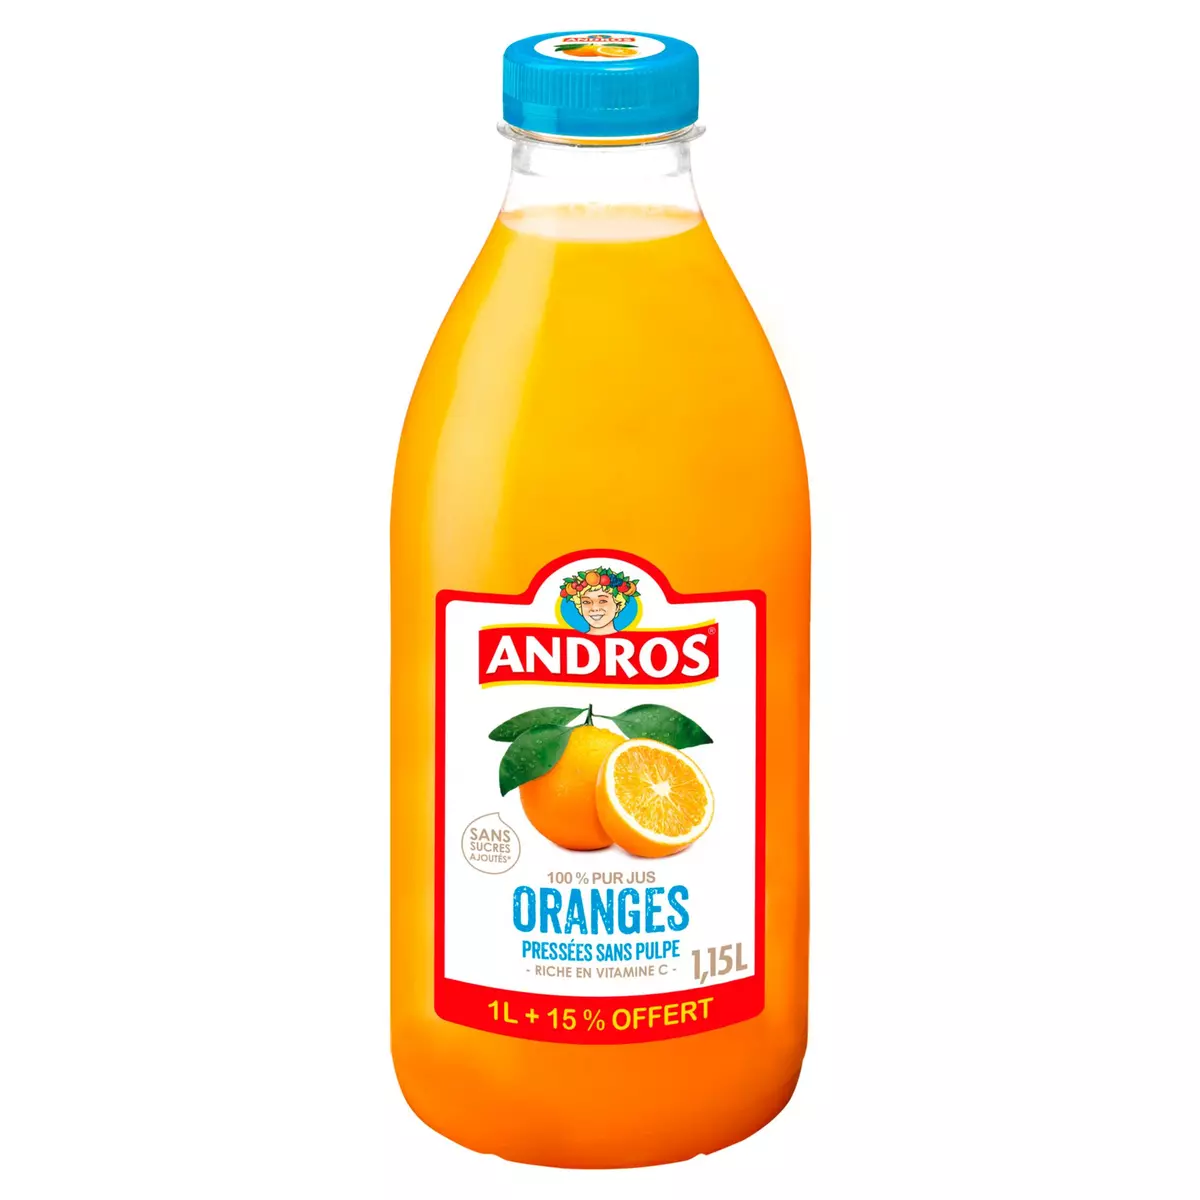 ANDROS Pur jus d'orange pressée sans pulpe et sans sucres ajoutés 1l+15% offert